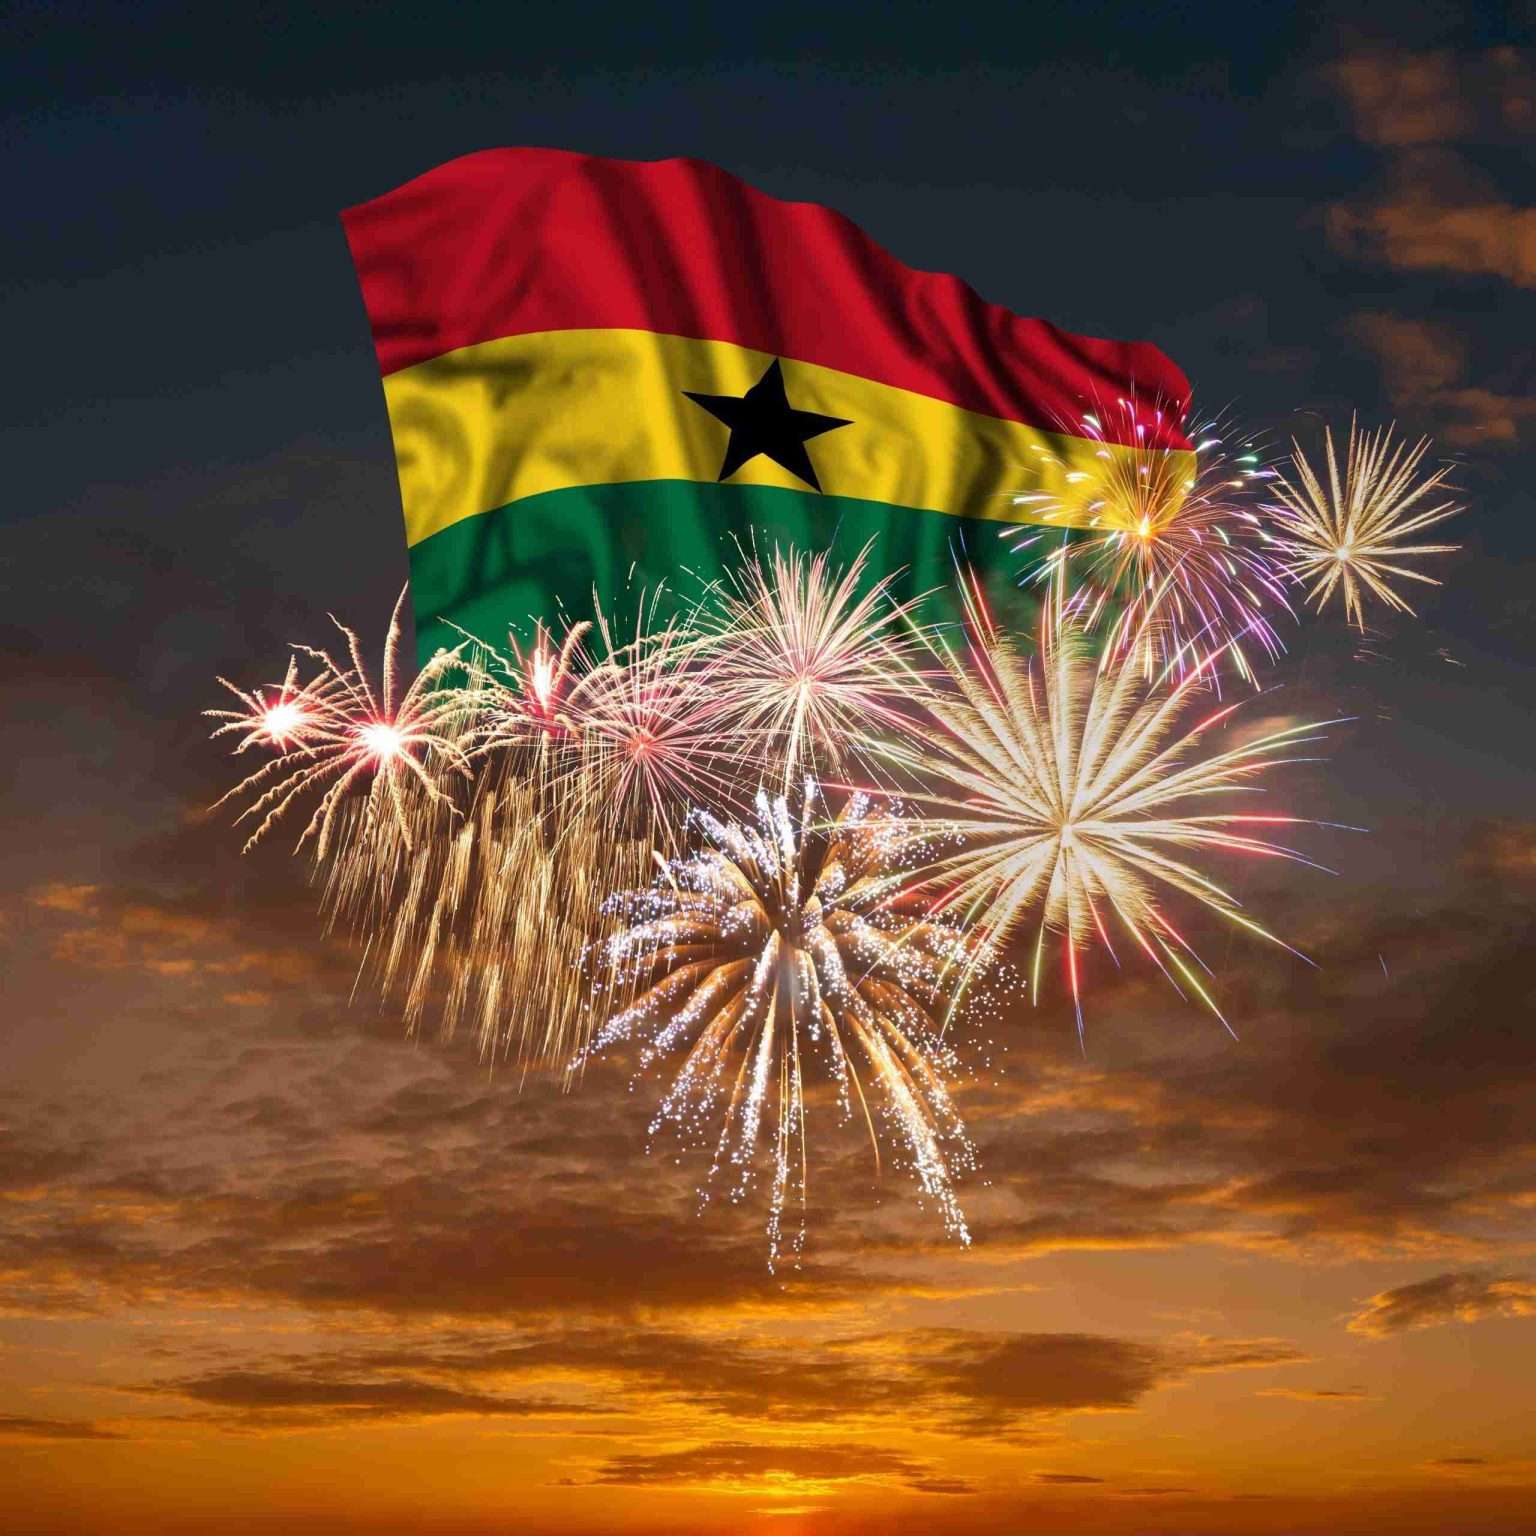 Ghana flag & fireworks